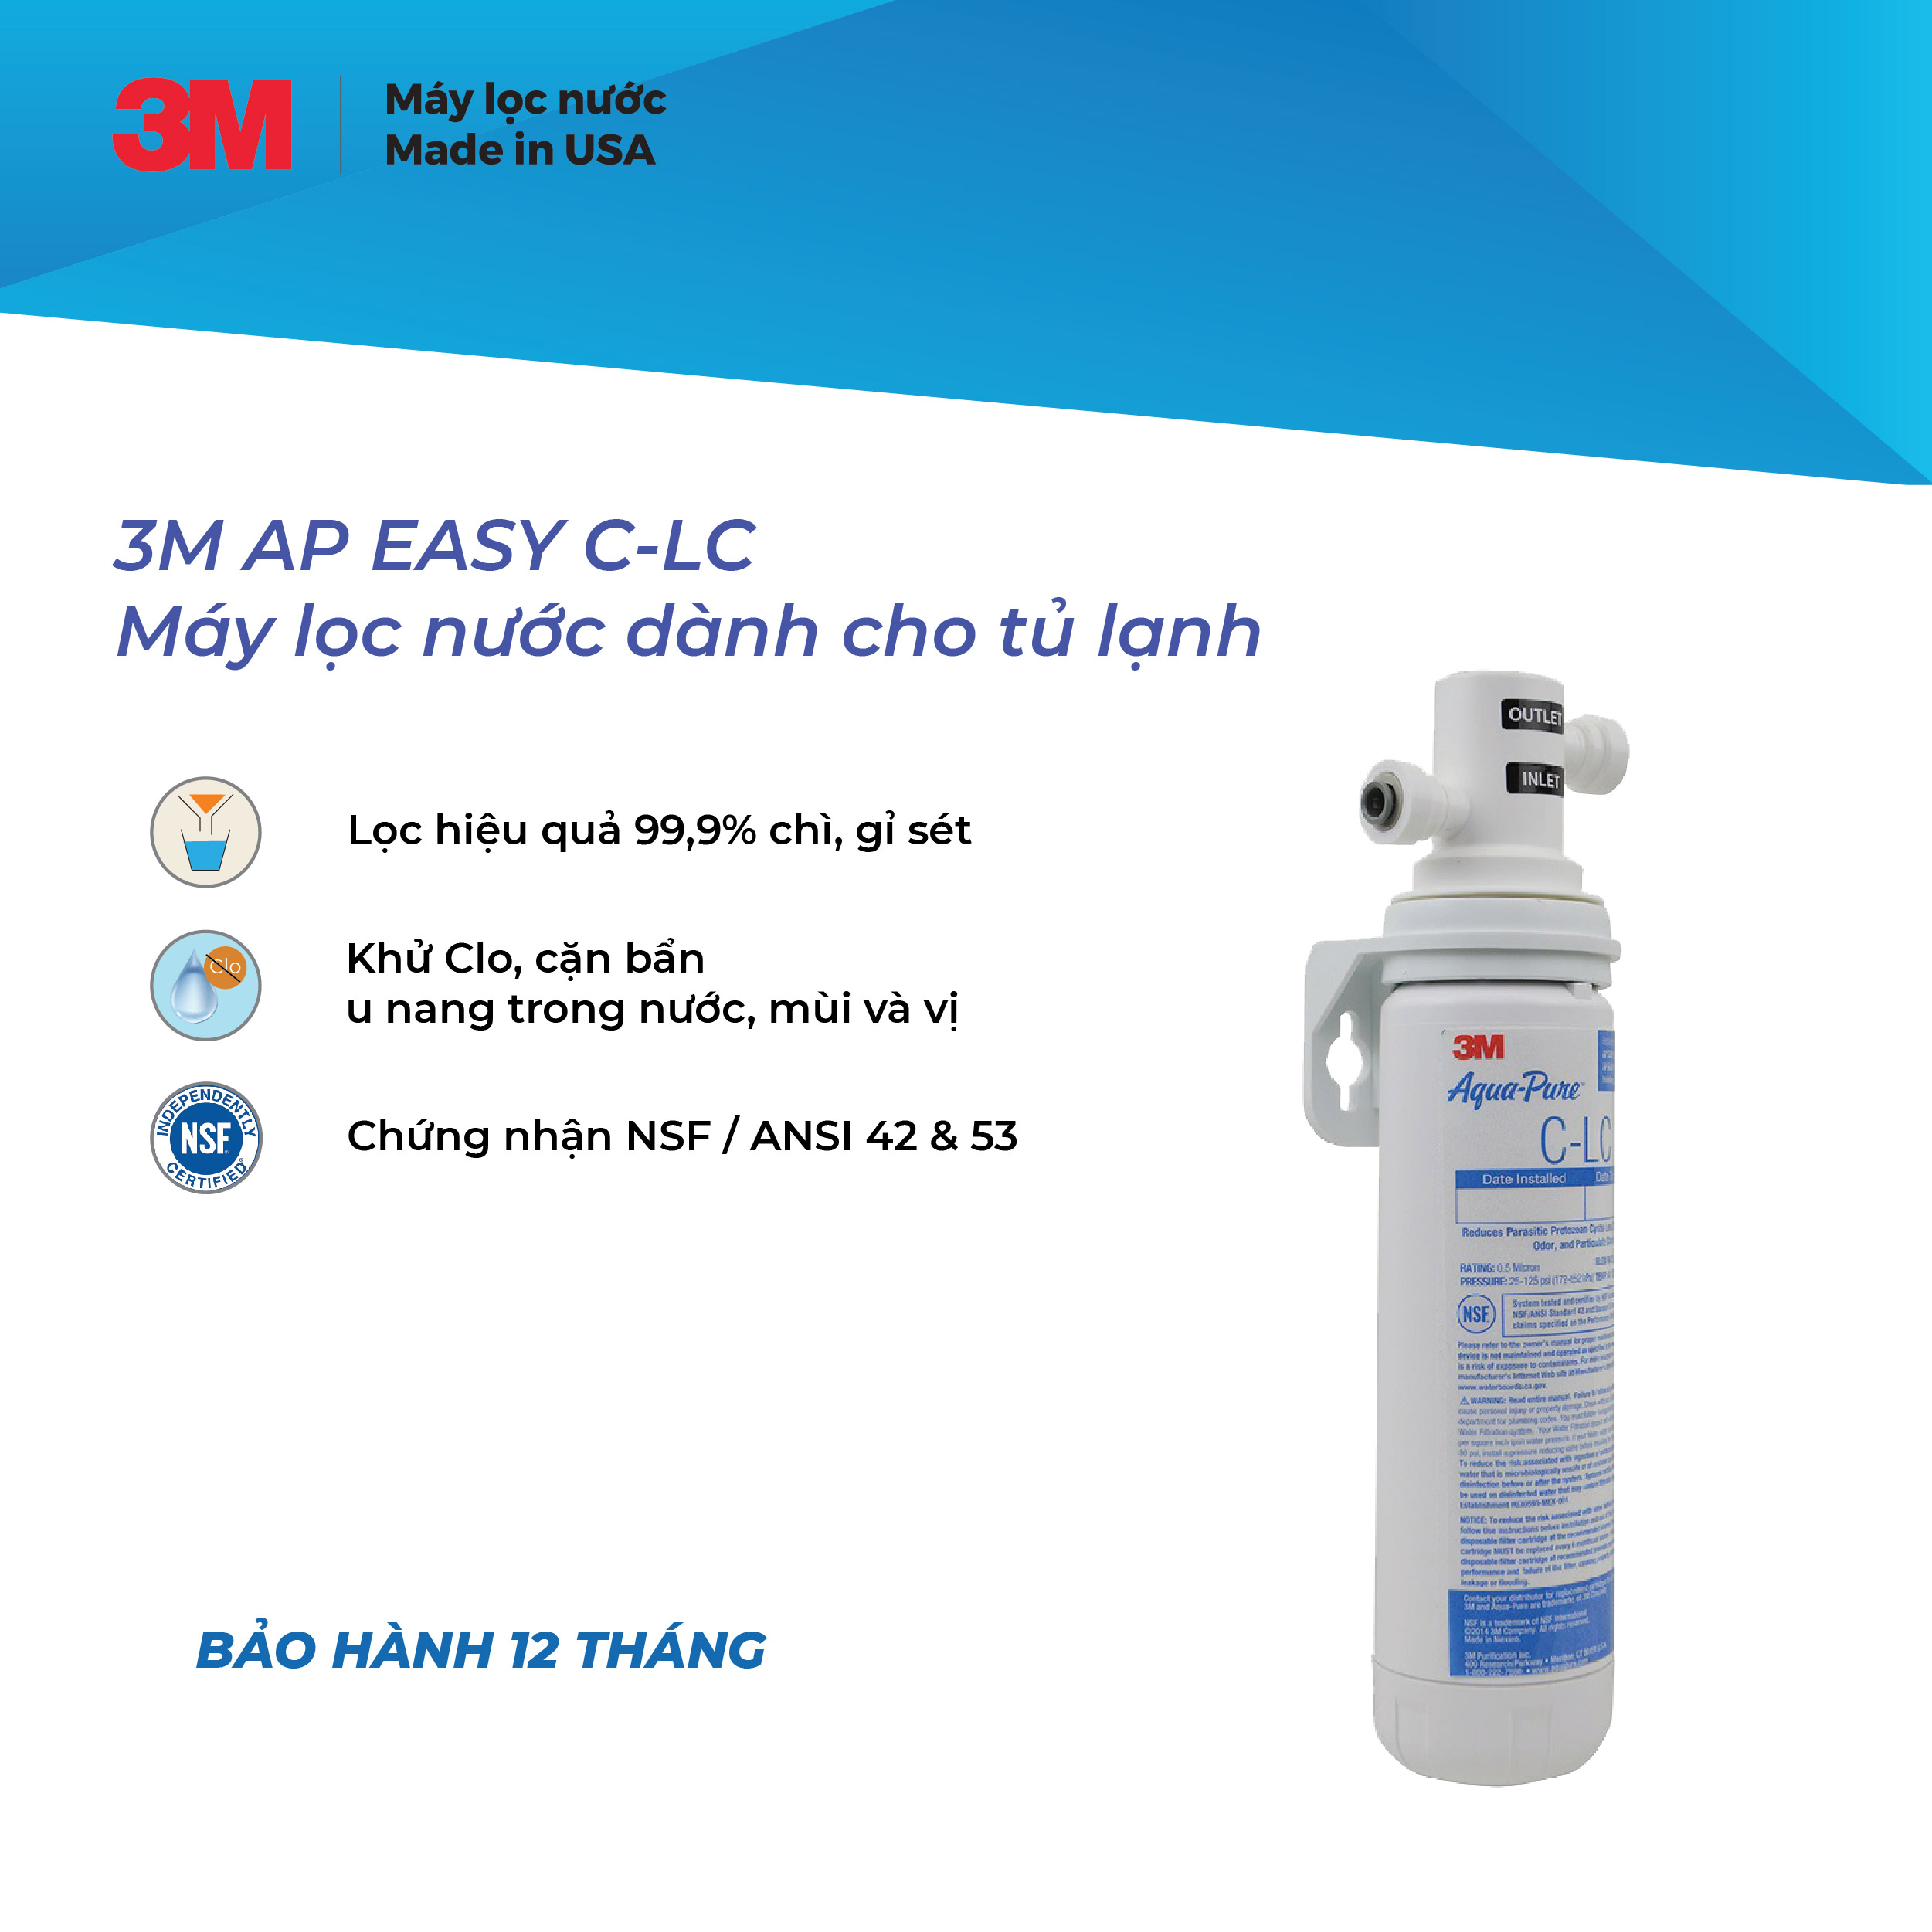 Máy lọc nước dành cho tủ lạnh 3M AP EASY C-LC